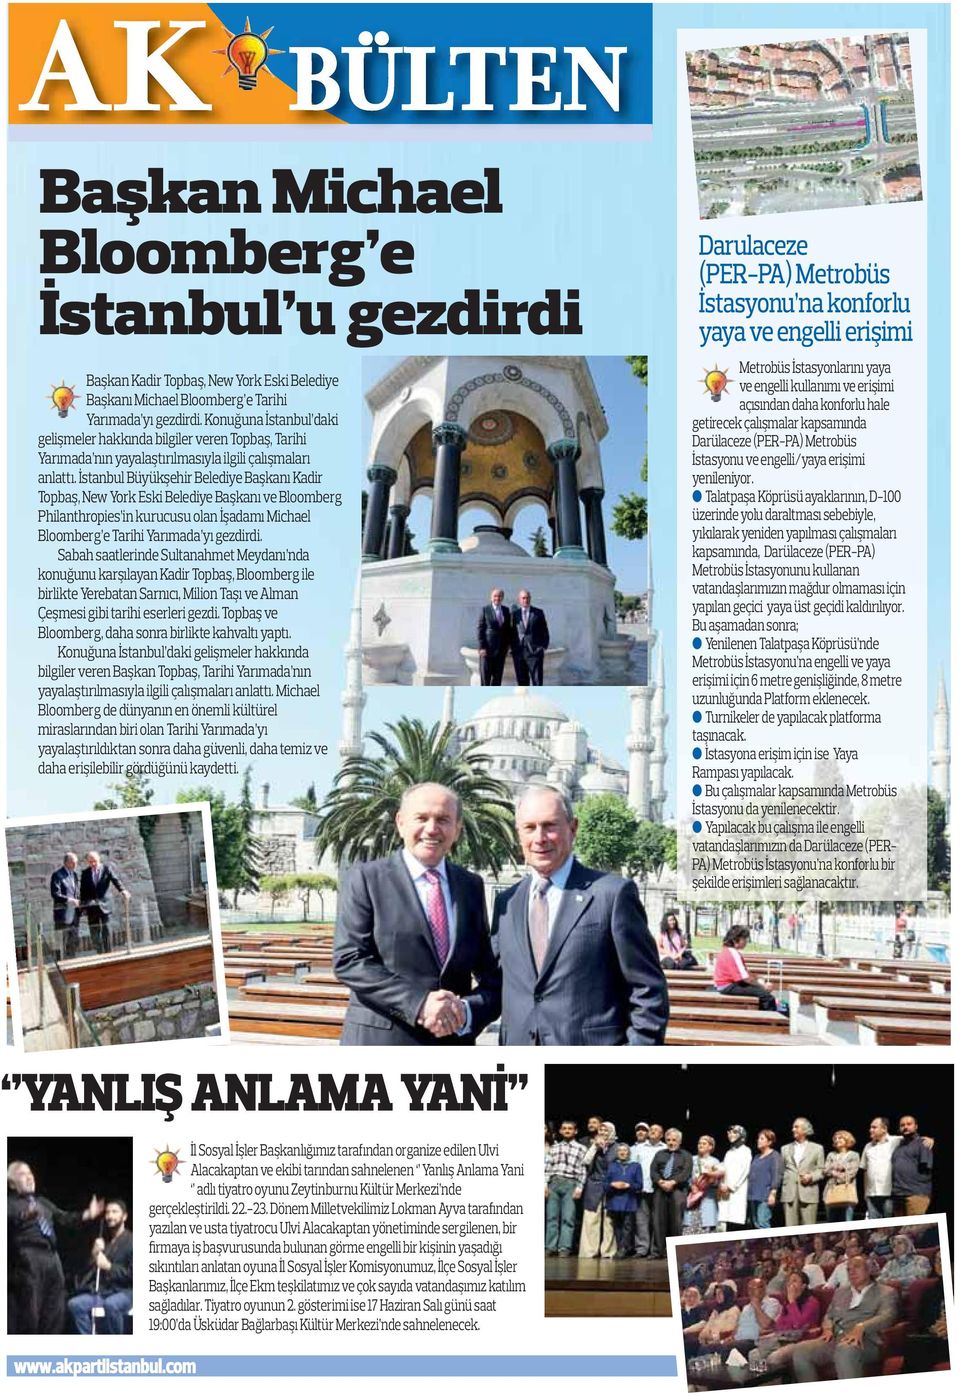 İstanbul Büyükşehir Belediye Başkanı Kadir Topbaş, New York Eski Belediye Başkanı ve Bloomberg Philanthropies in kurucusu olan İşadamı Michael Bloomberg e Tarihi Yarımada yı gezdirdi.